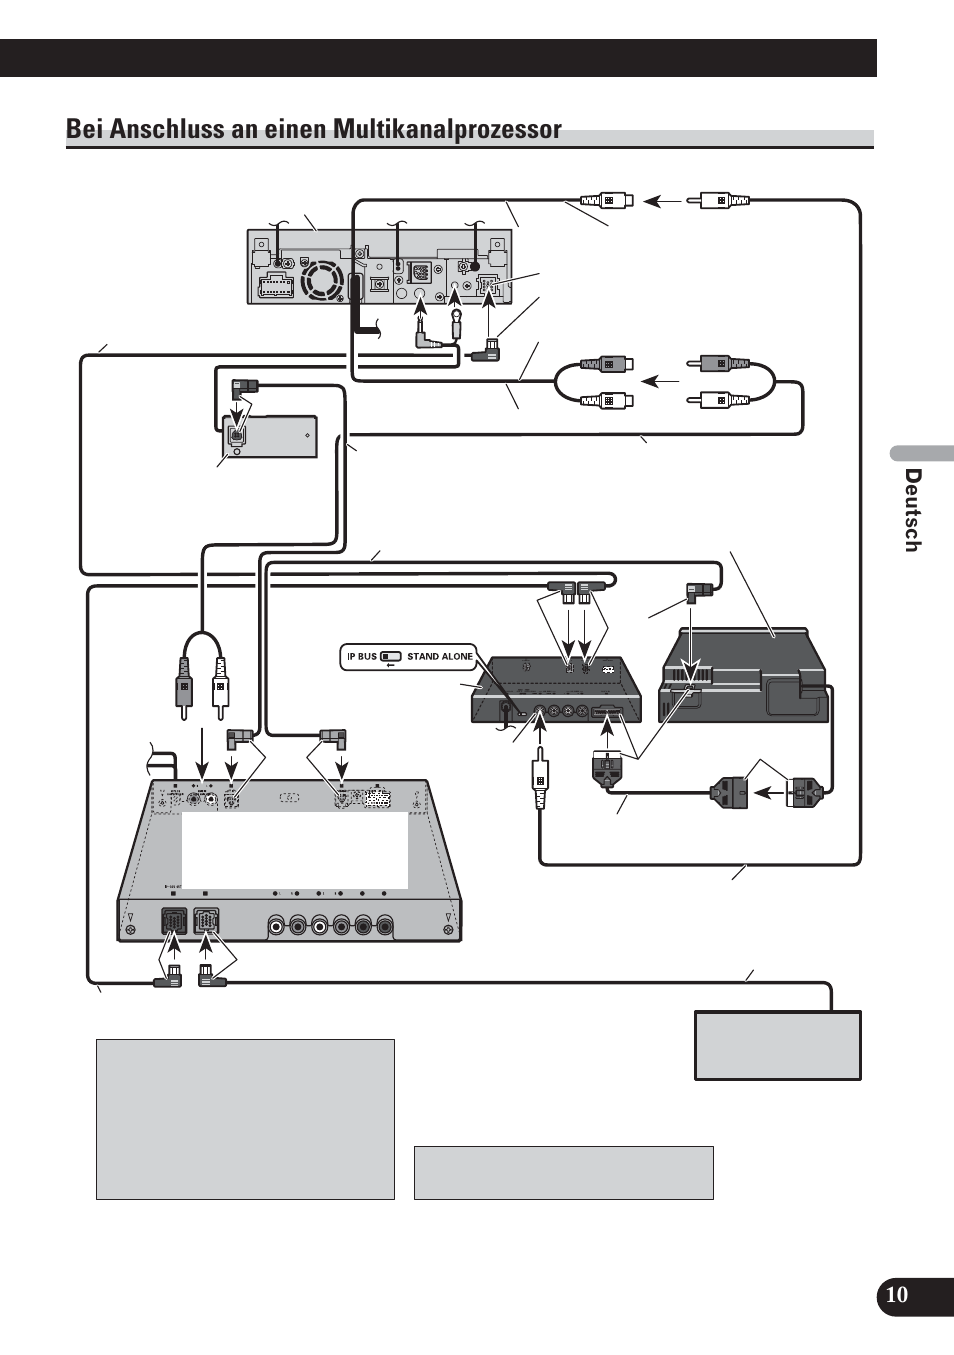 Bei anschluss an einen multikanalprozessor | Pioneer AVH-P5100DVD User  Manual | Page 43 / 98 | Original mode